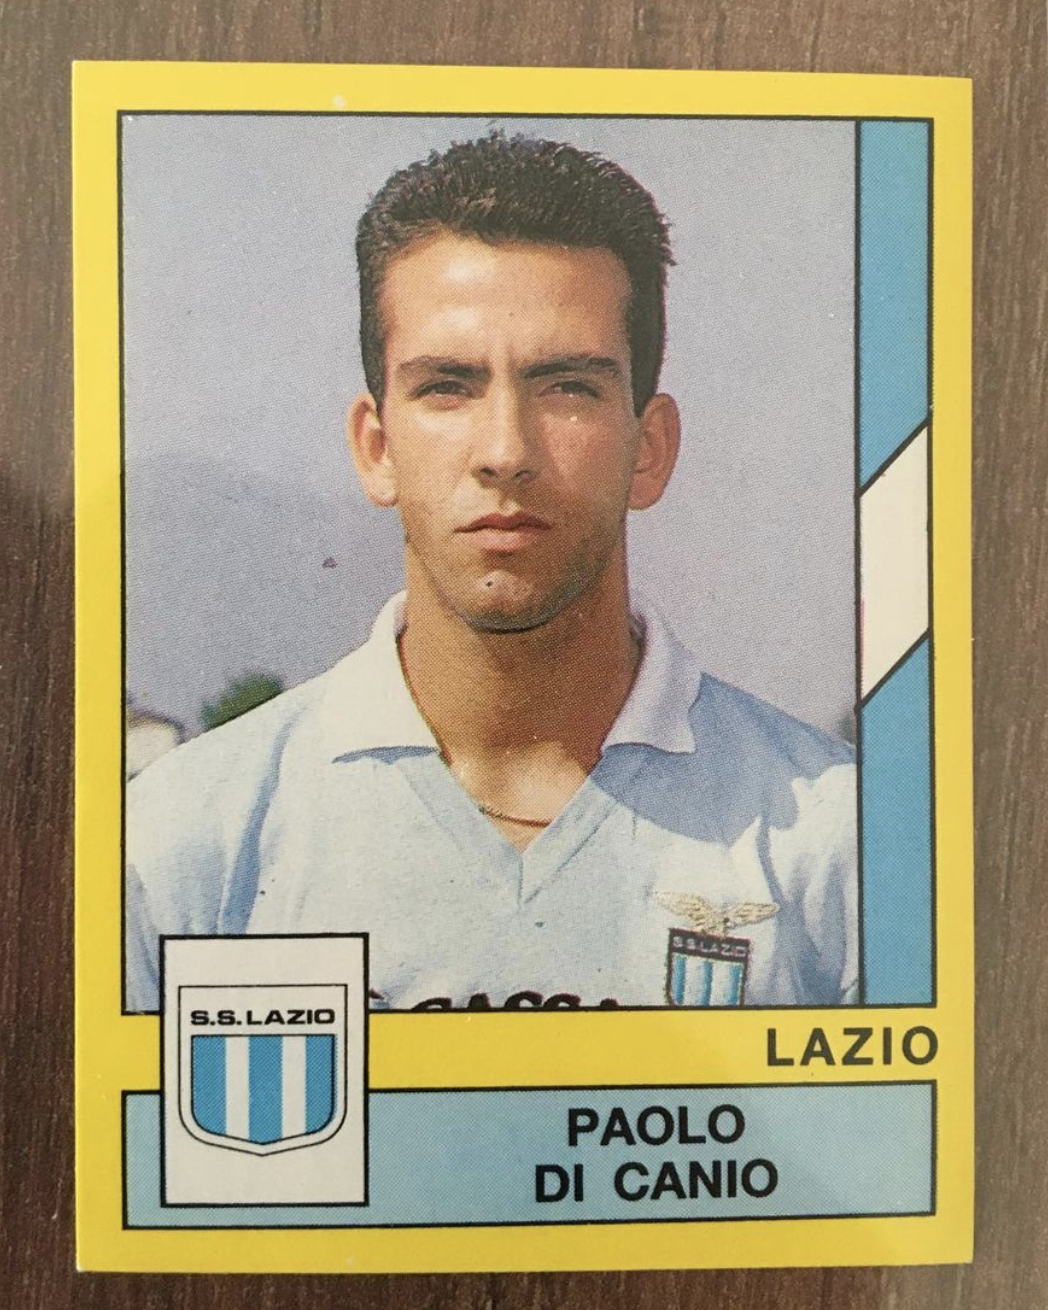 Fabio Capello - Autographed Soccer Sticker Card - Panini A.S. Roma 2001-2002